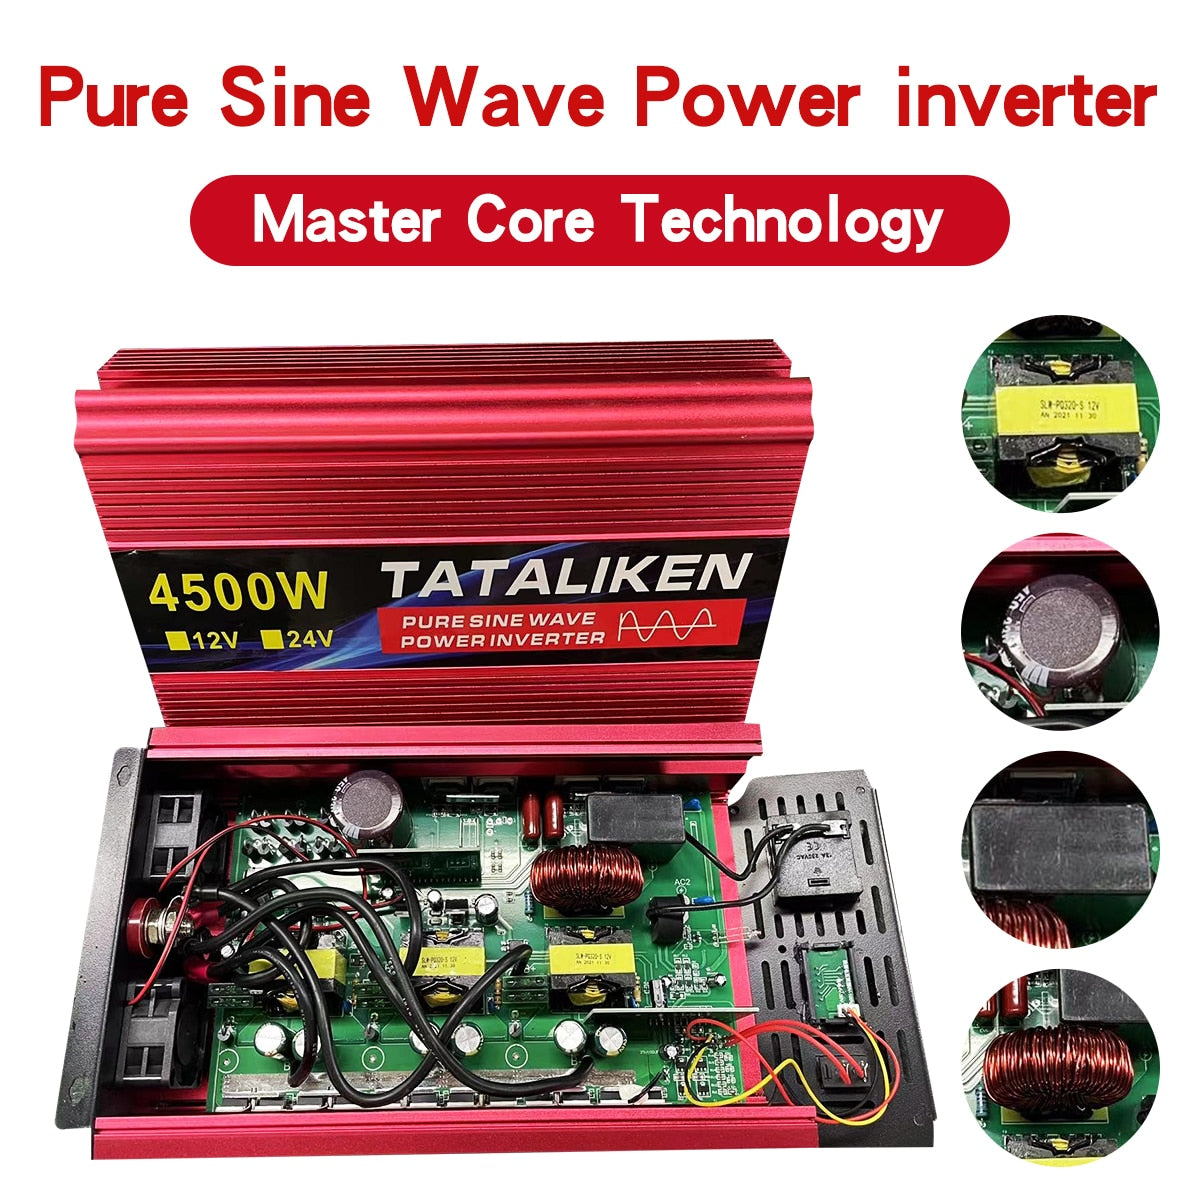 Inverter DC12V/24V To AC 220V Voltage 50/60HZ Power Solar Transformer Pure Sine WaveConverter With LED Display Universal Socket